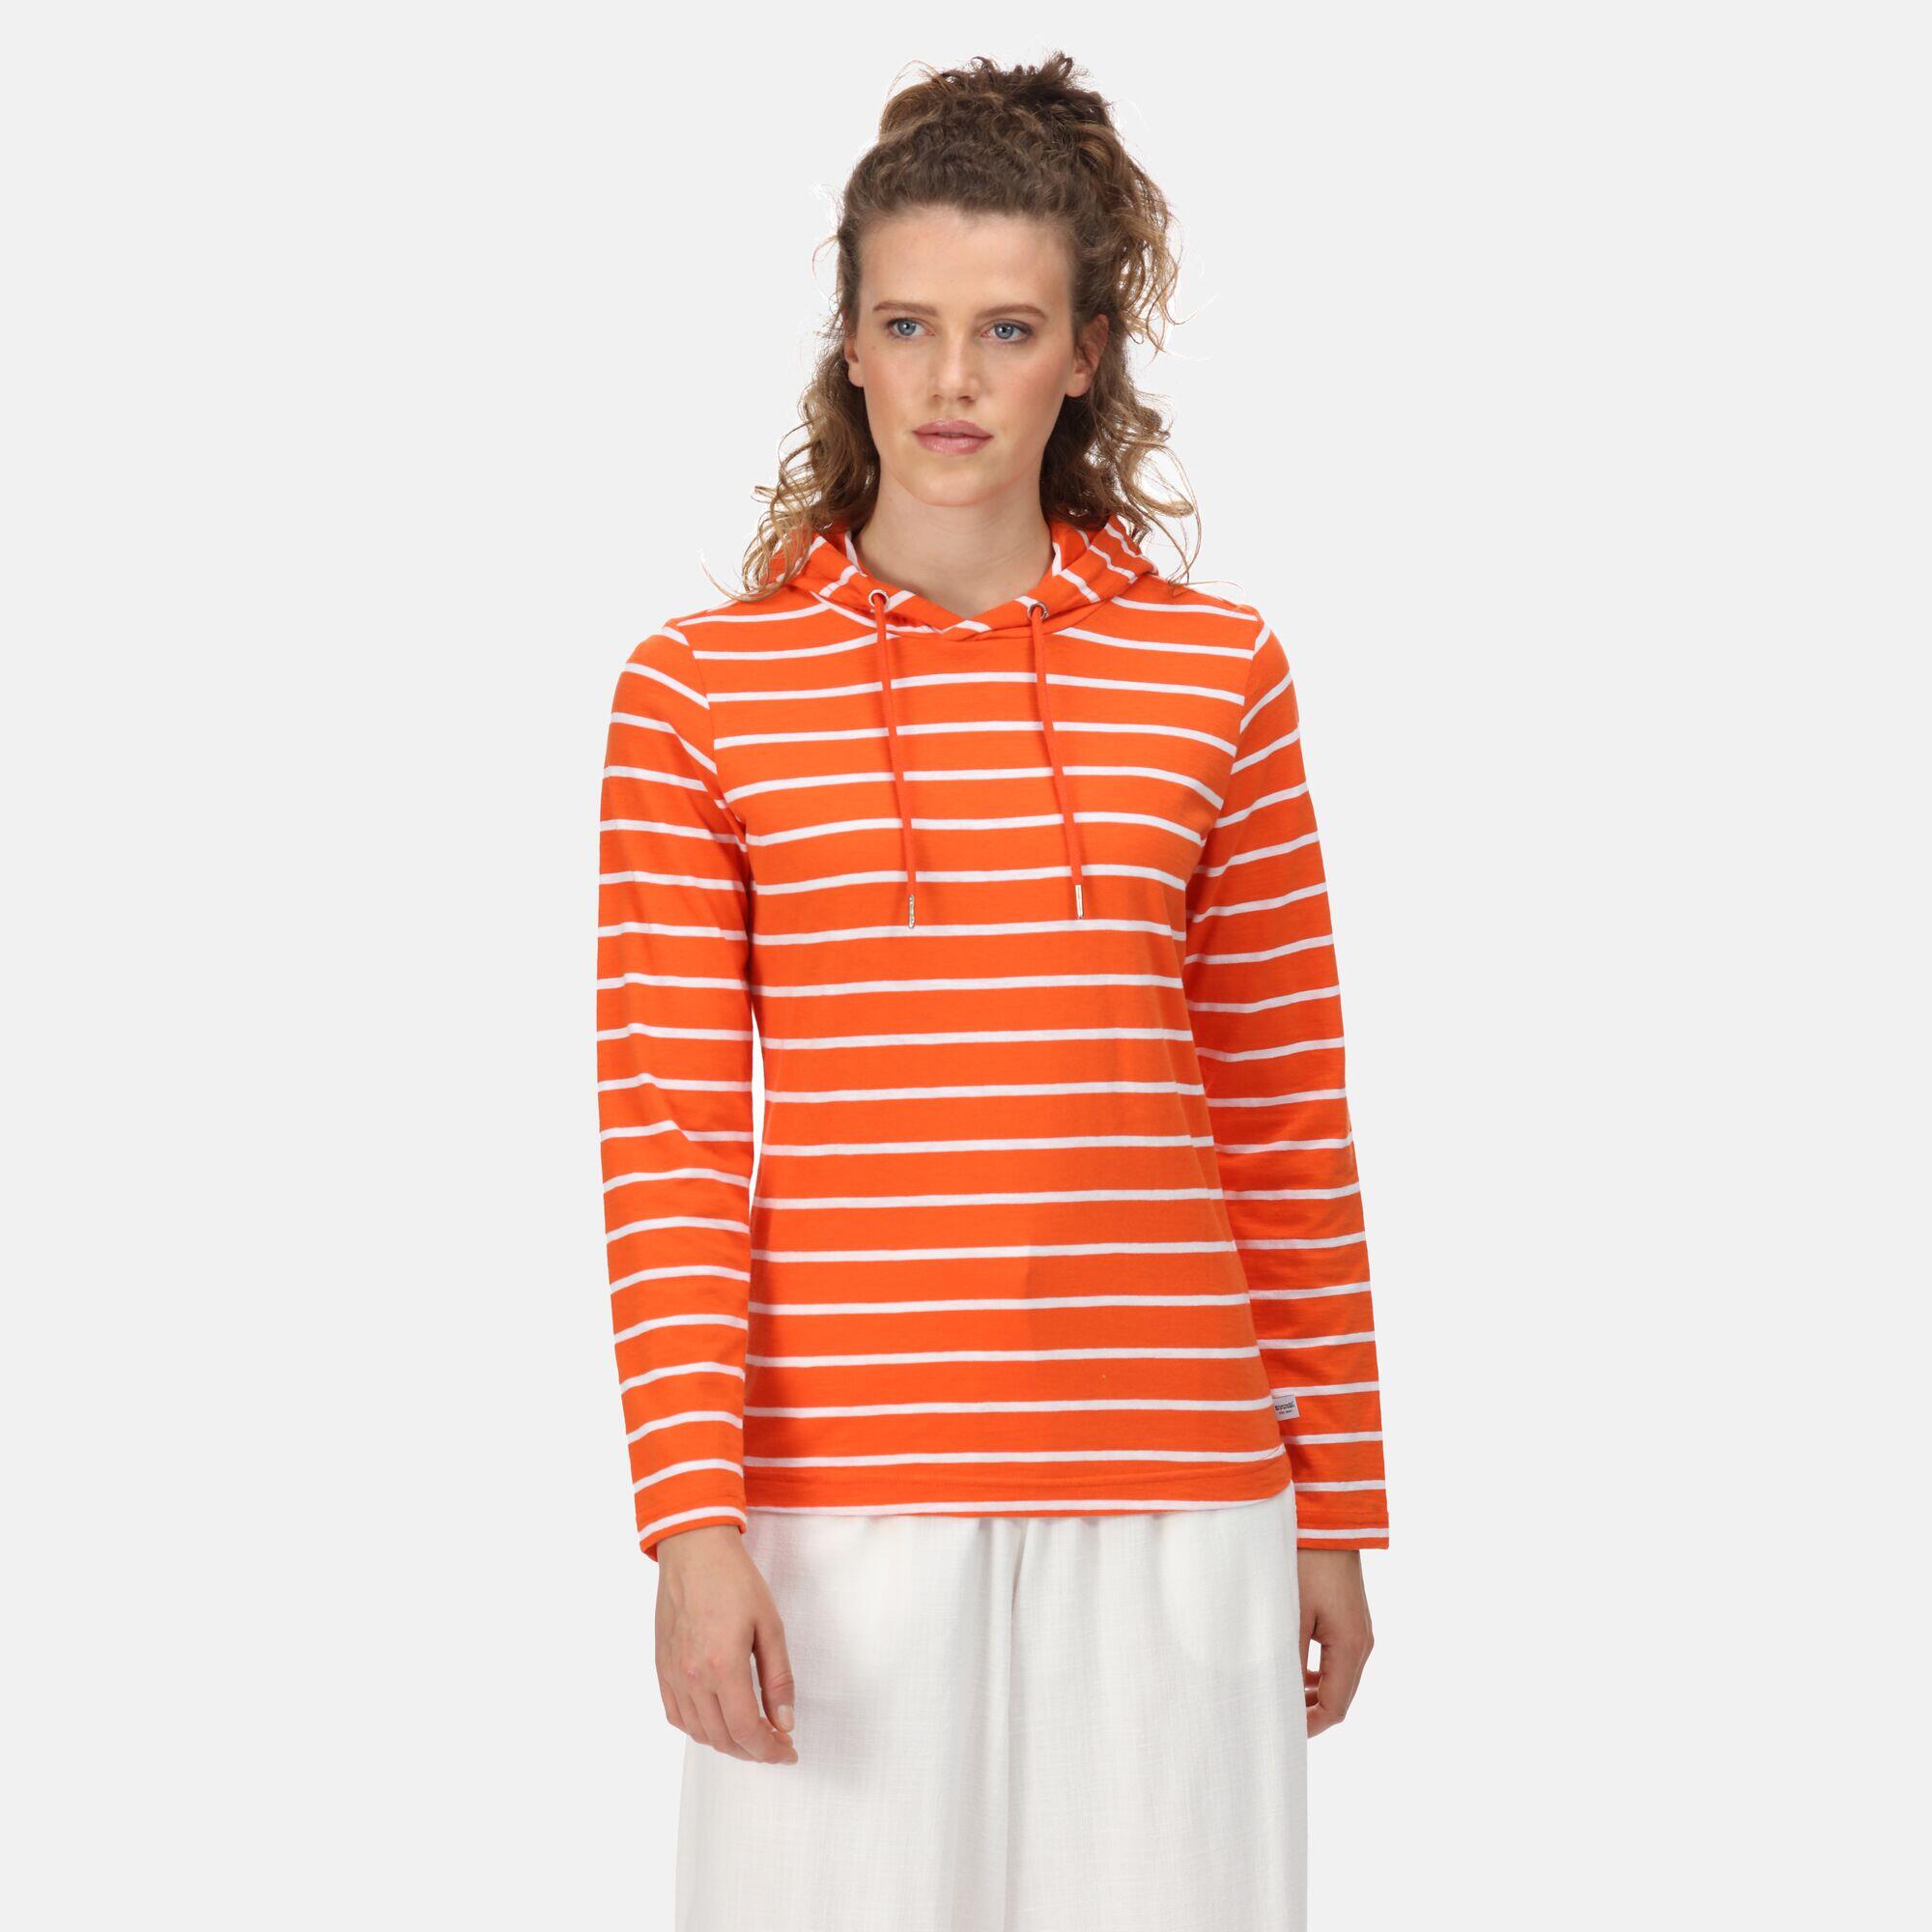 Maelys Women's Walking Long Sleeve T-Shirt - Orange Crayon 1/5